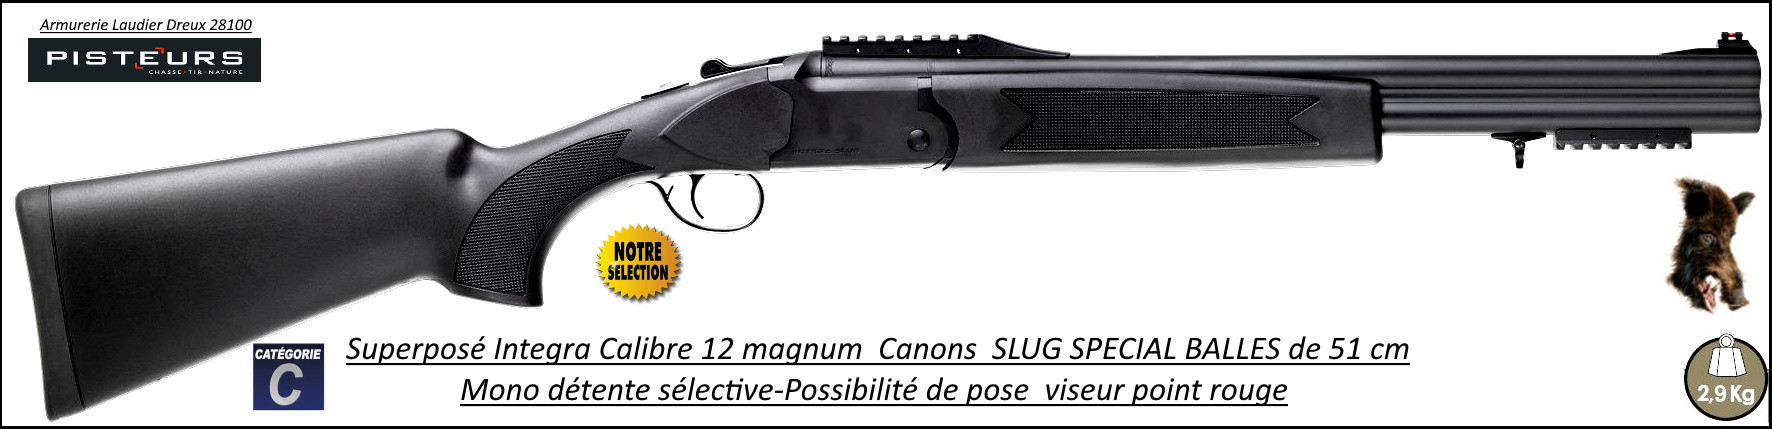 Superposé Integra SLUG-Spécial gros gibier Canons 51 cm Calibre 12 magnum-Ref int 0007